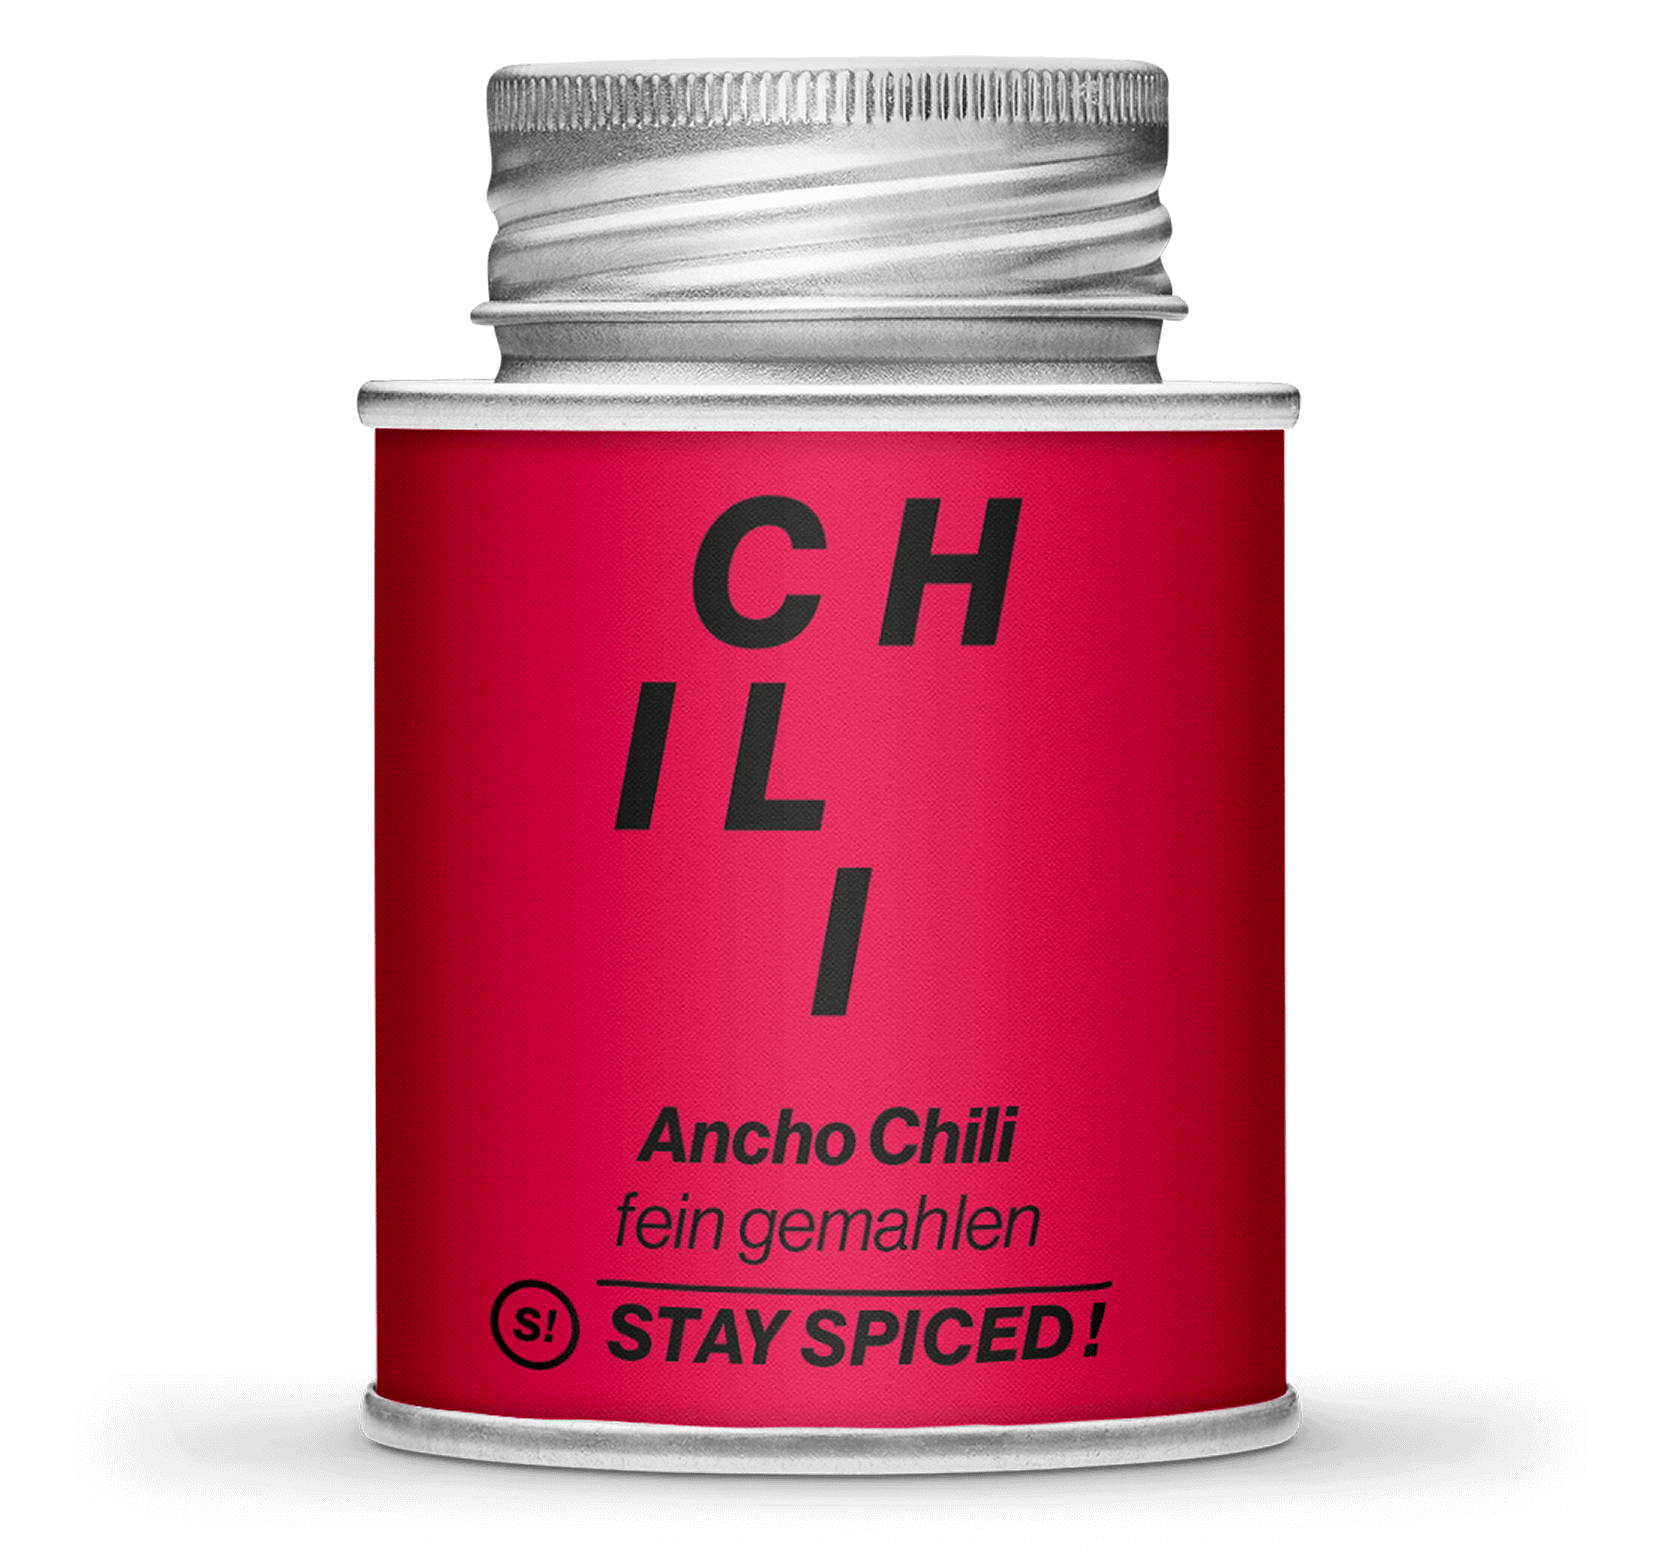 Ancho Chili gemahlen, 170ml Schraubdose